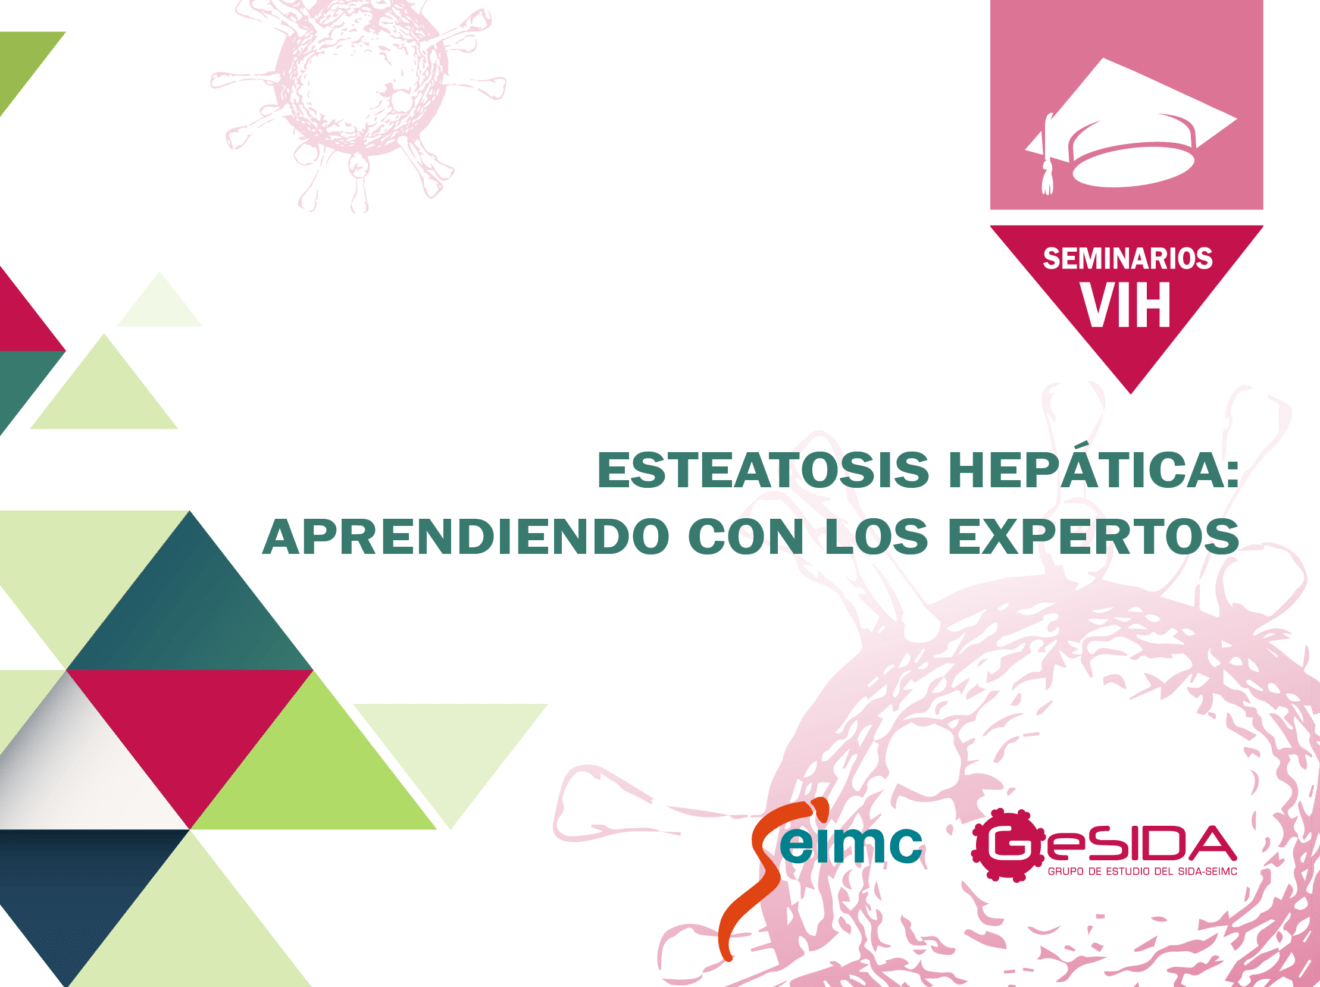 Anota nuestra próxima actividad en Campus SEMC: Seminario sobre esteatosis hepática